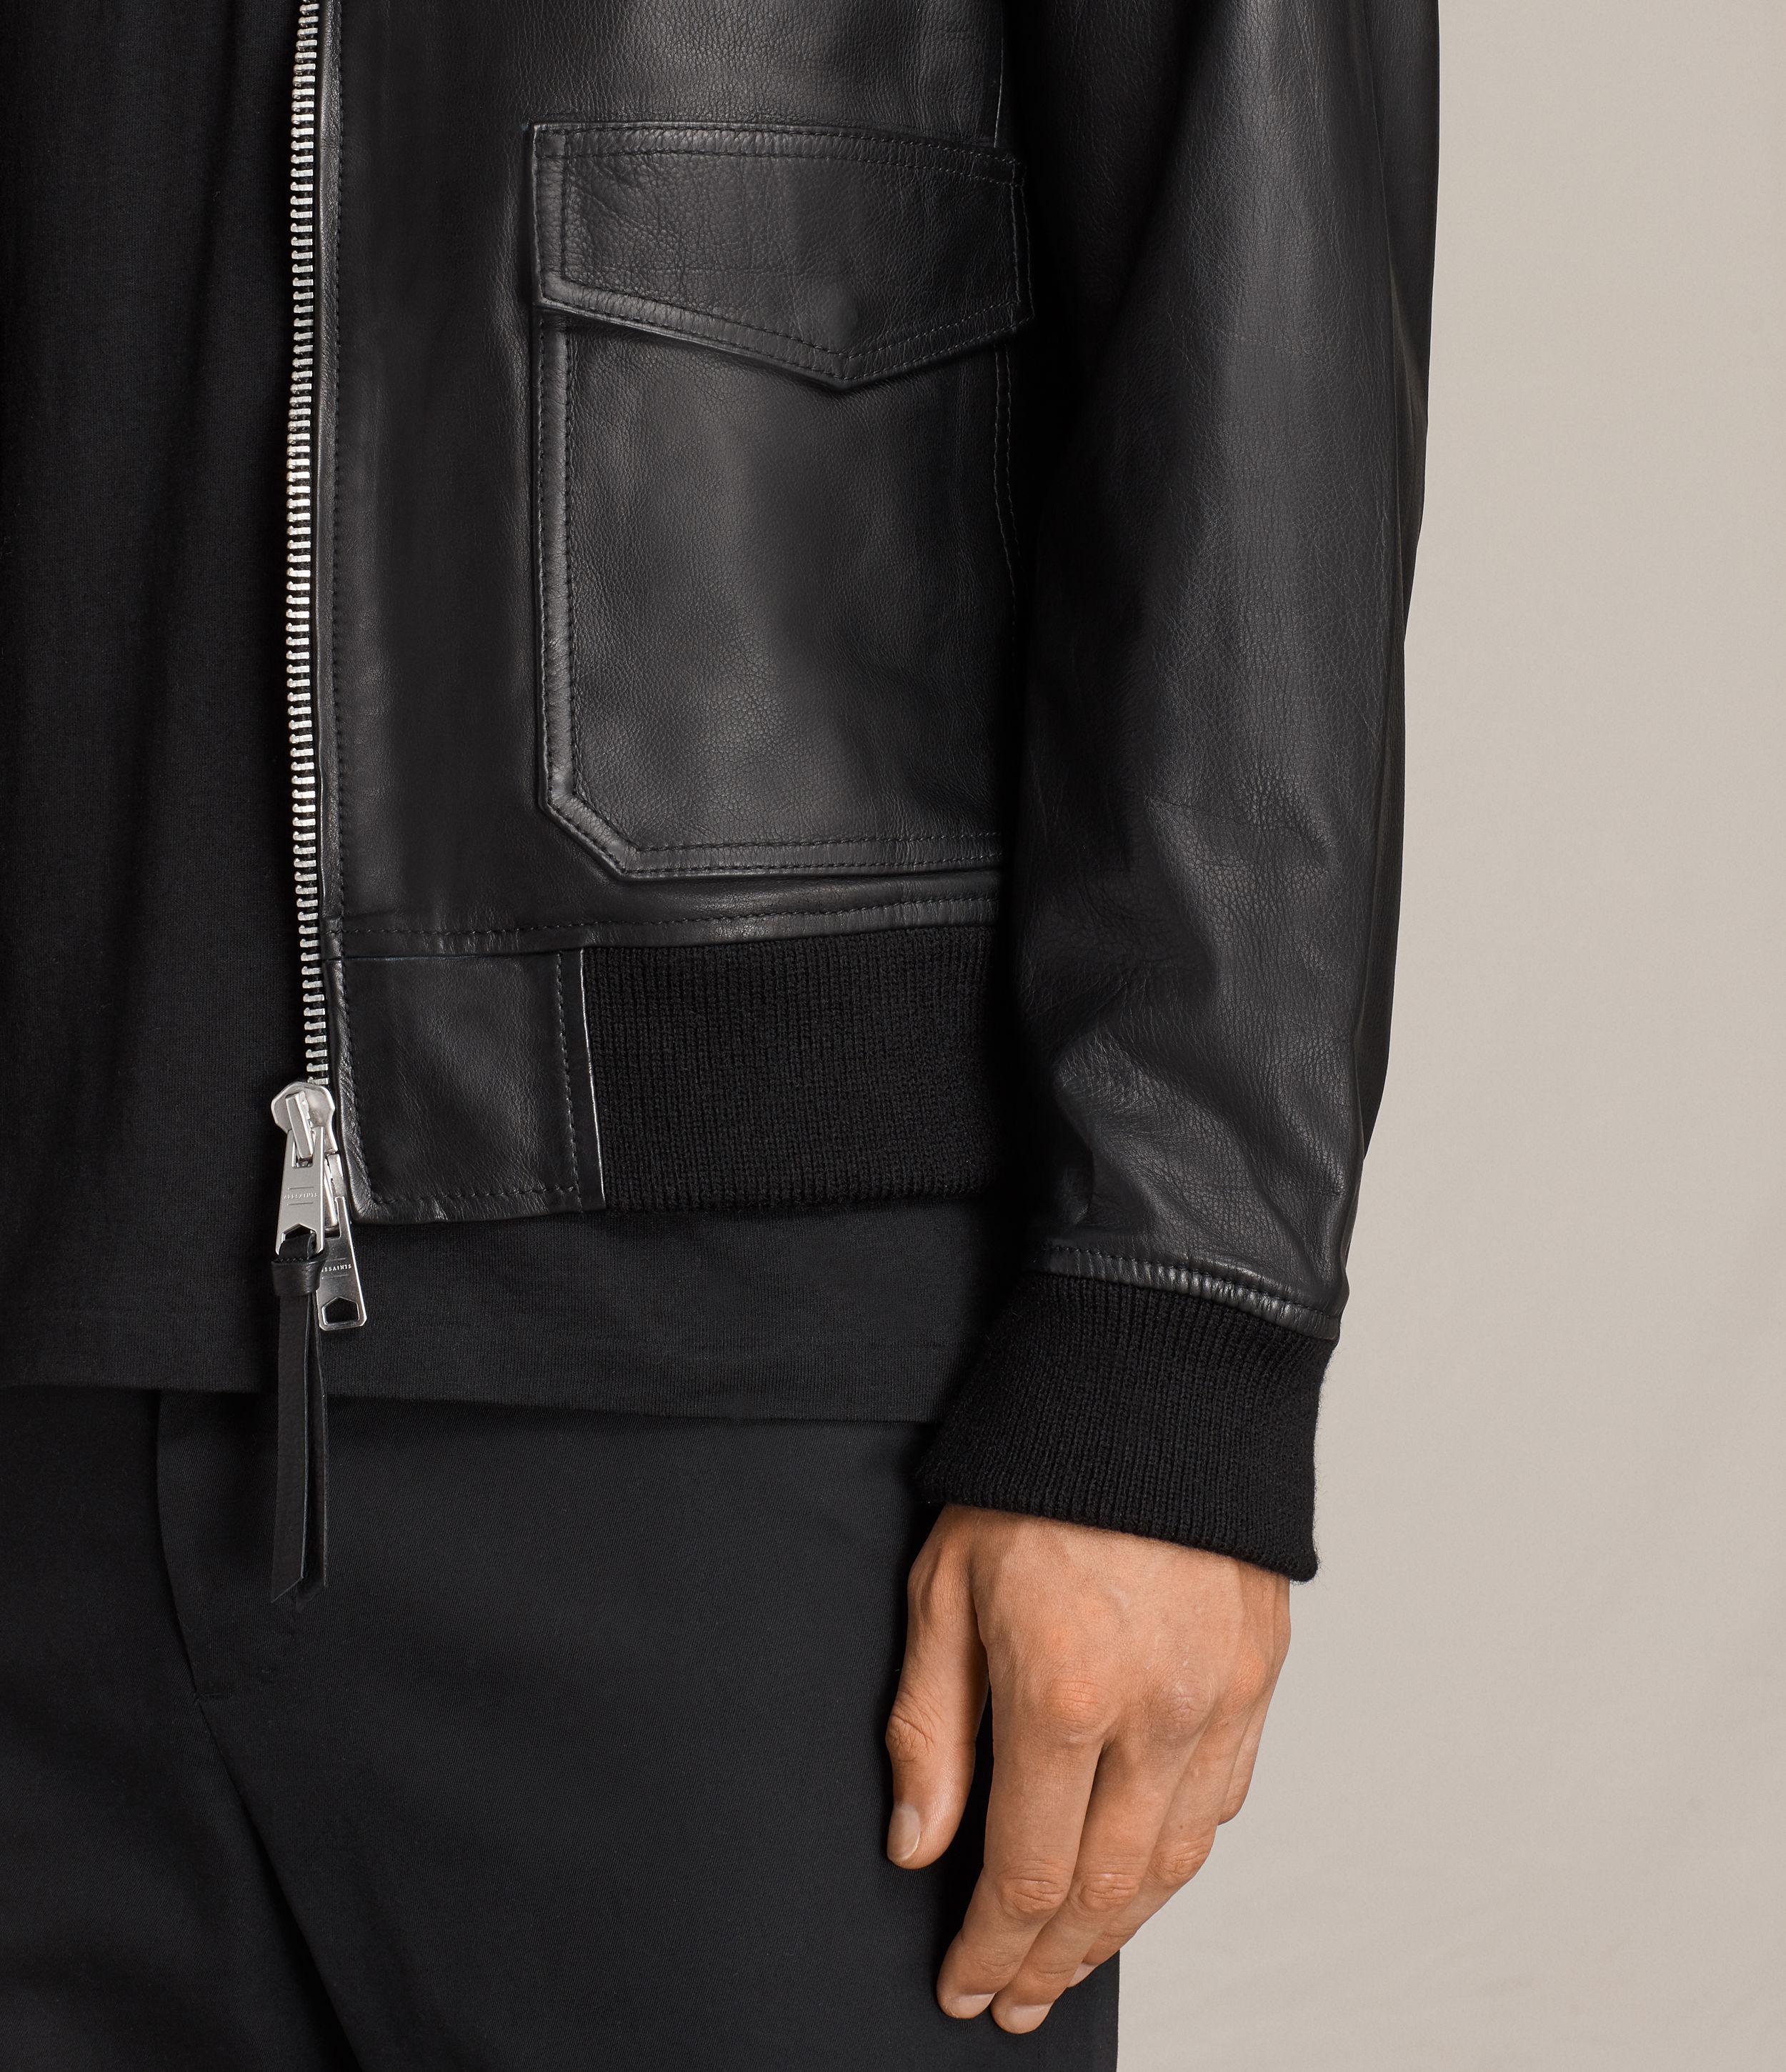 AllSaints Oban Aviator Leather Jacket in Black for Men - Lyst